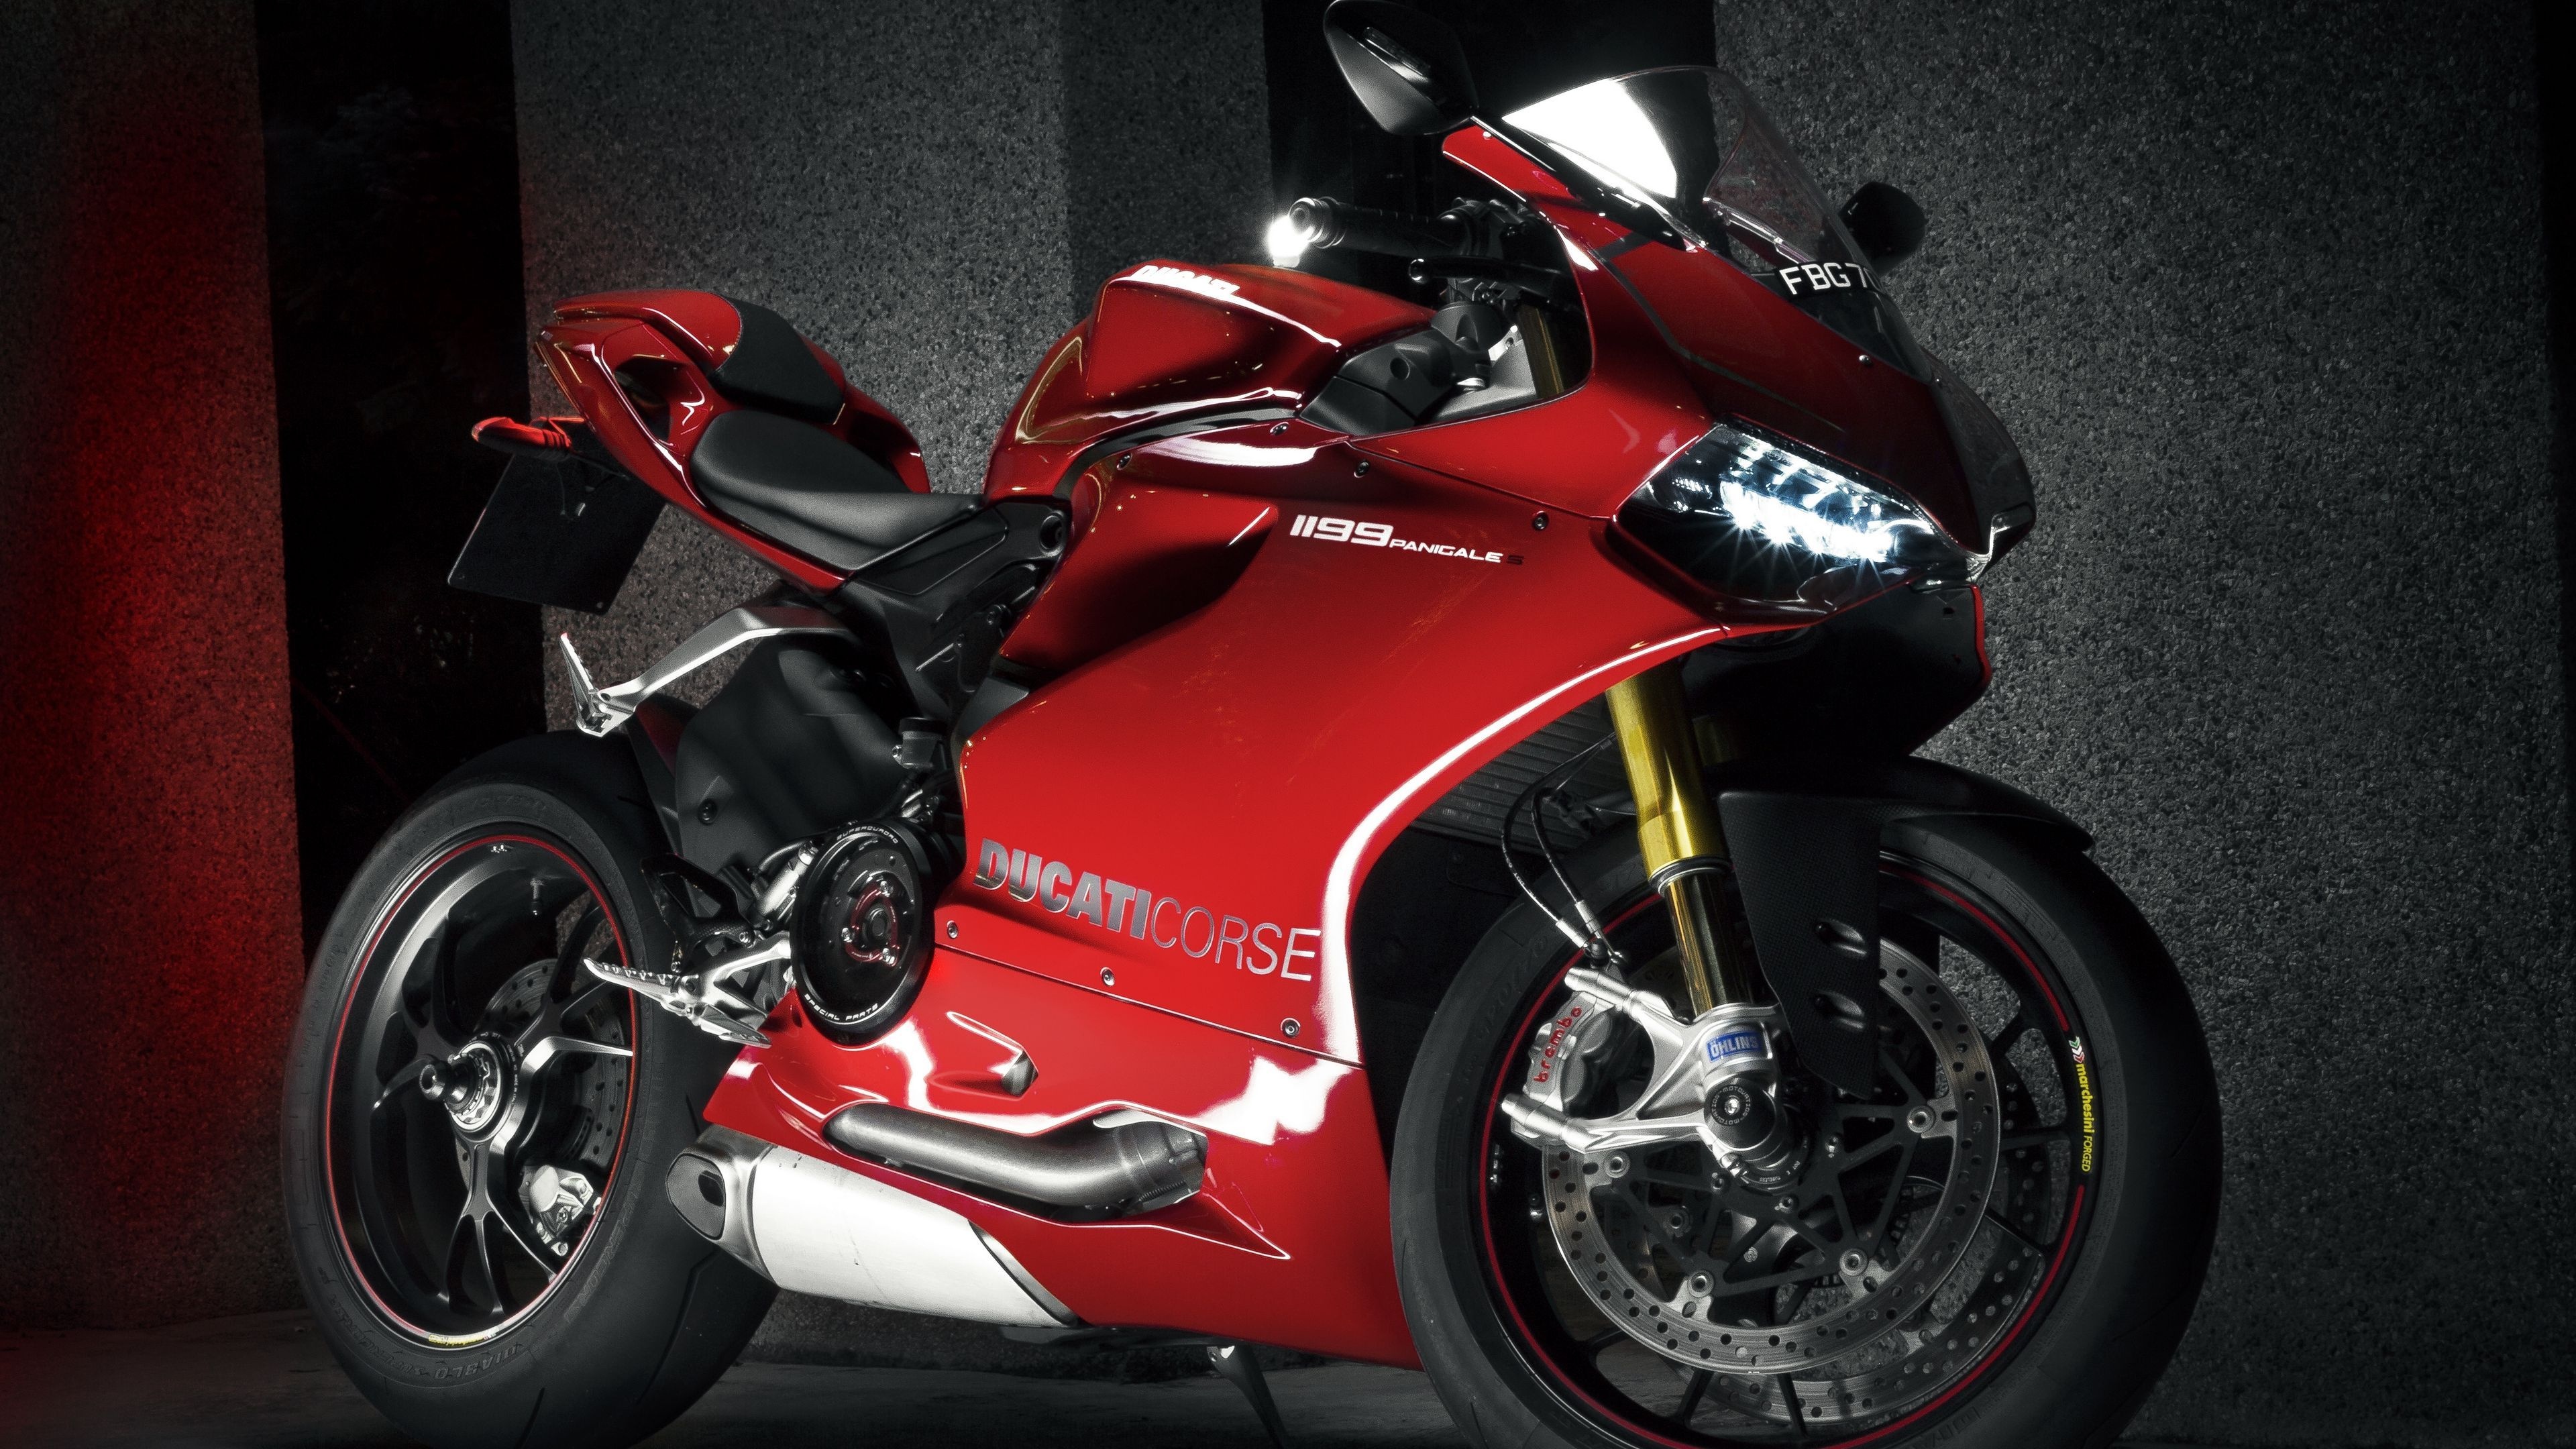 Superbike: Ducati 1199 Panigale racing purpose-built motorcycle, MotoGP, Ducati Corse. 3840x2160 4K Wallpaper.